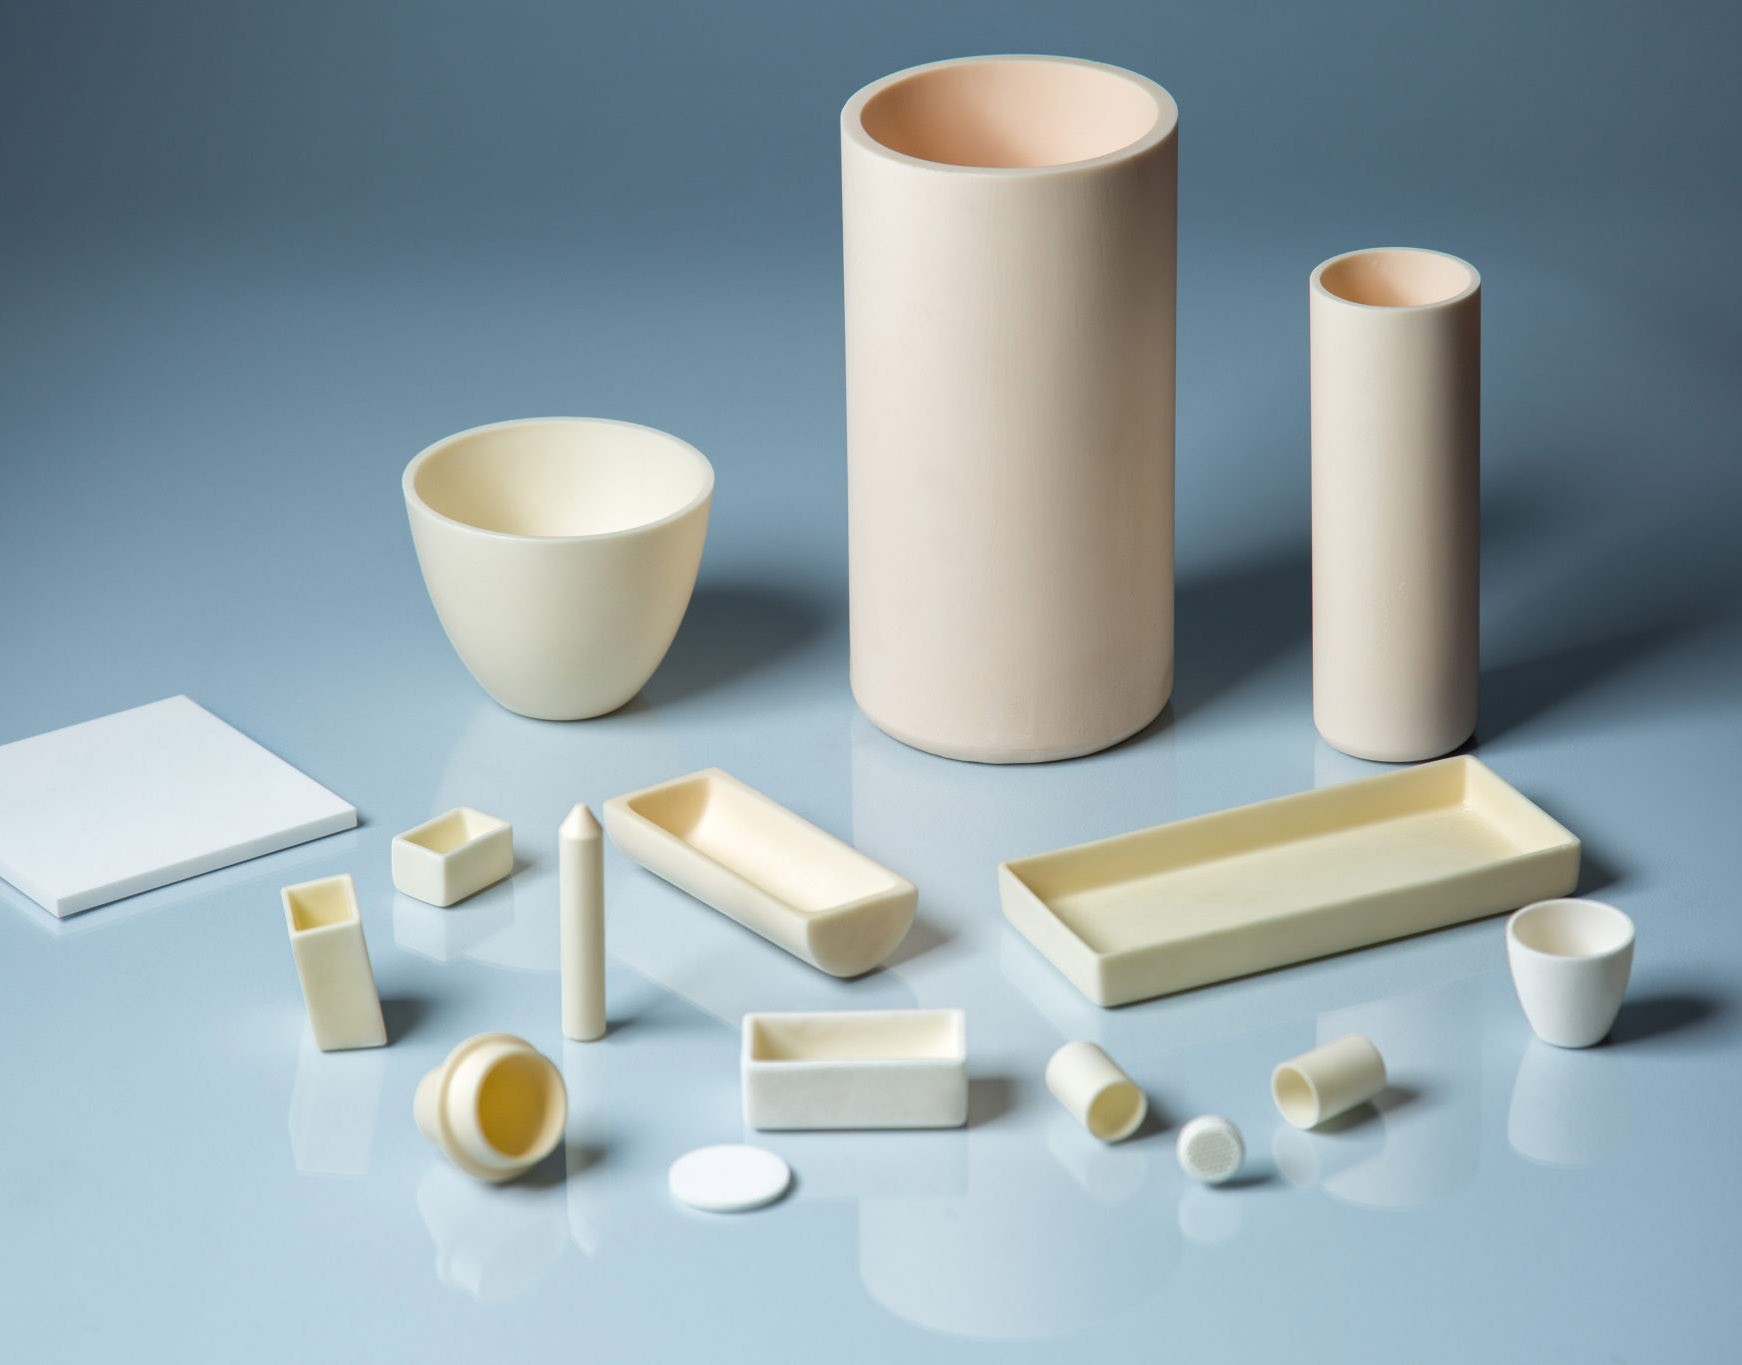 Ceramic material